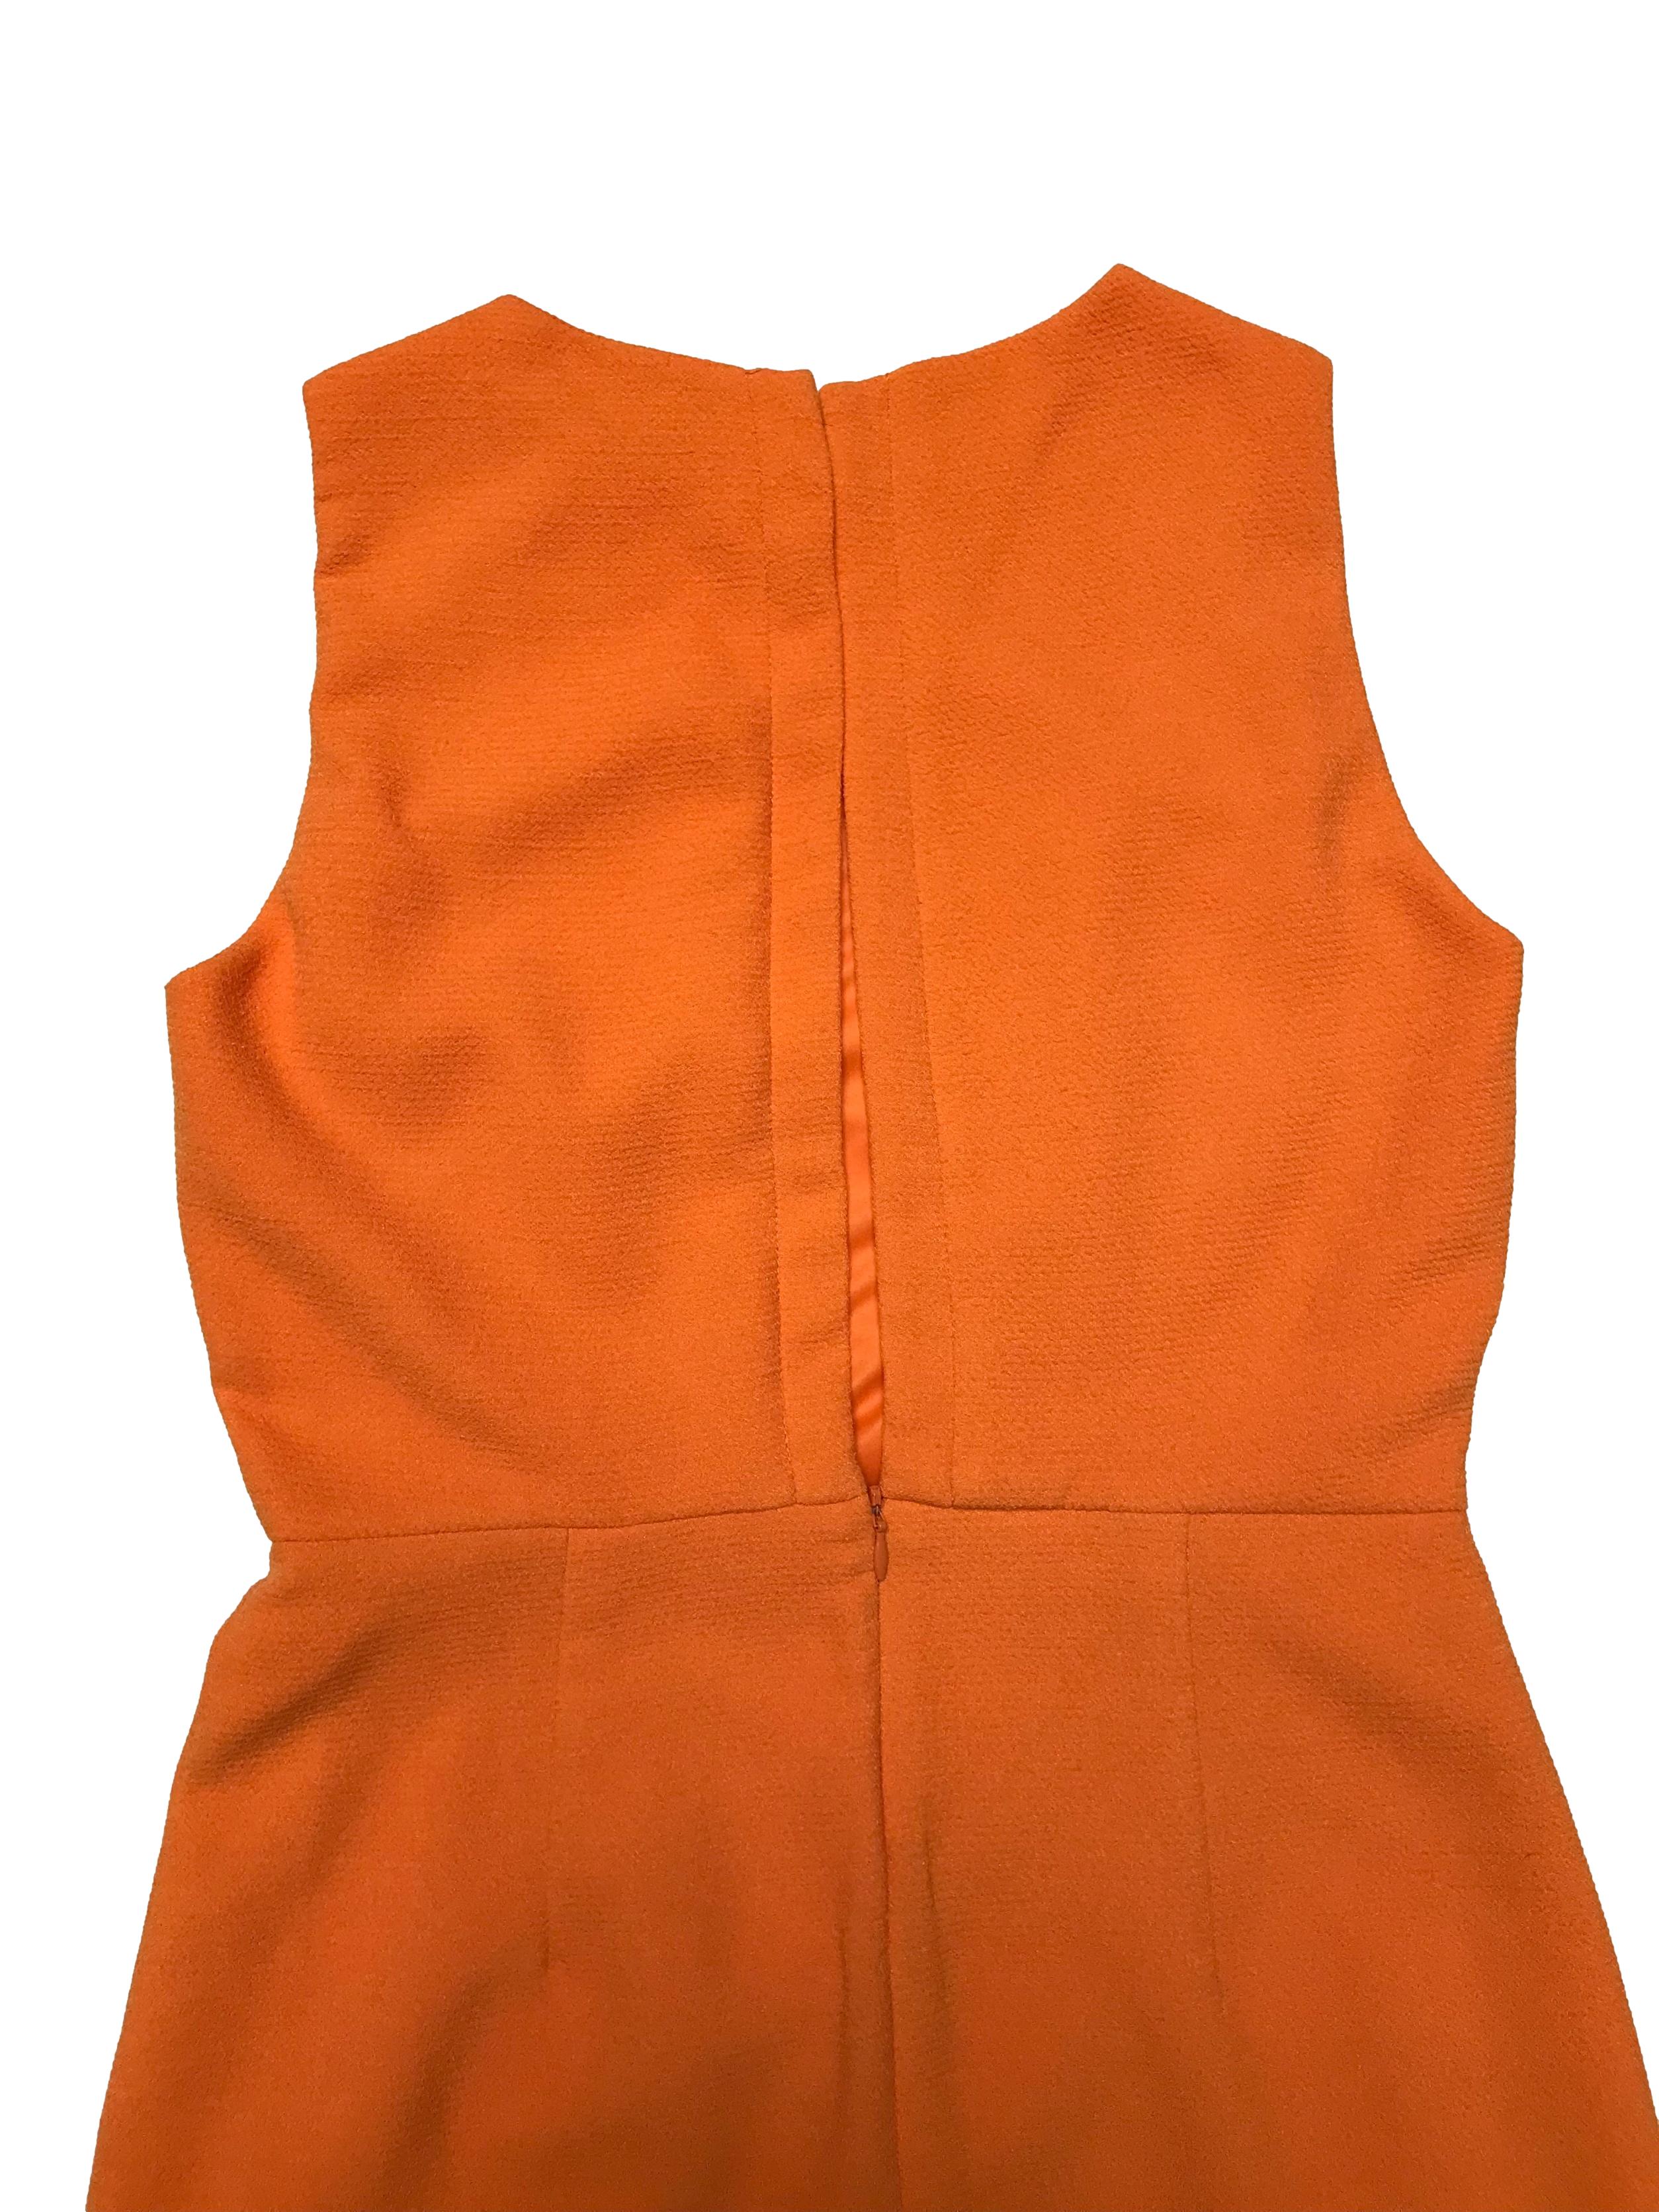 Vestido Zara anaranjado de tela con textura, forrado, con botón posterior en el cuello, escote en espalda y cierre en falda. Busto 90cm Cintura 72cm Largo 85cm